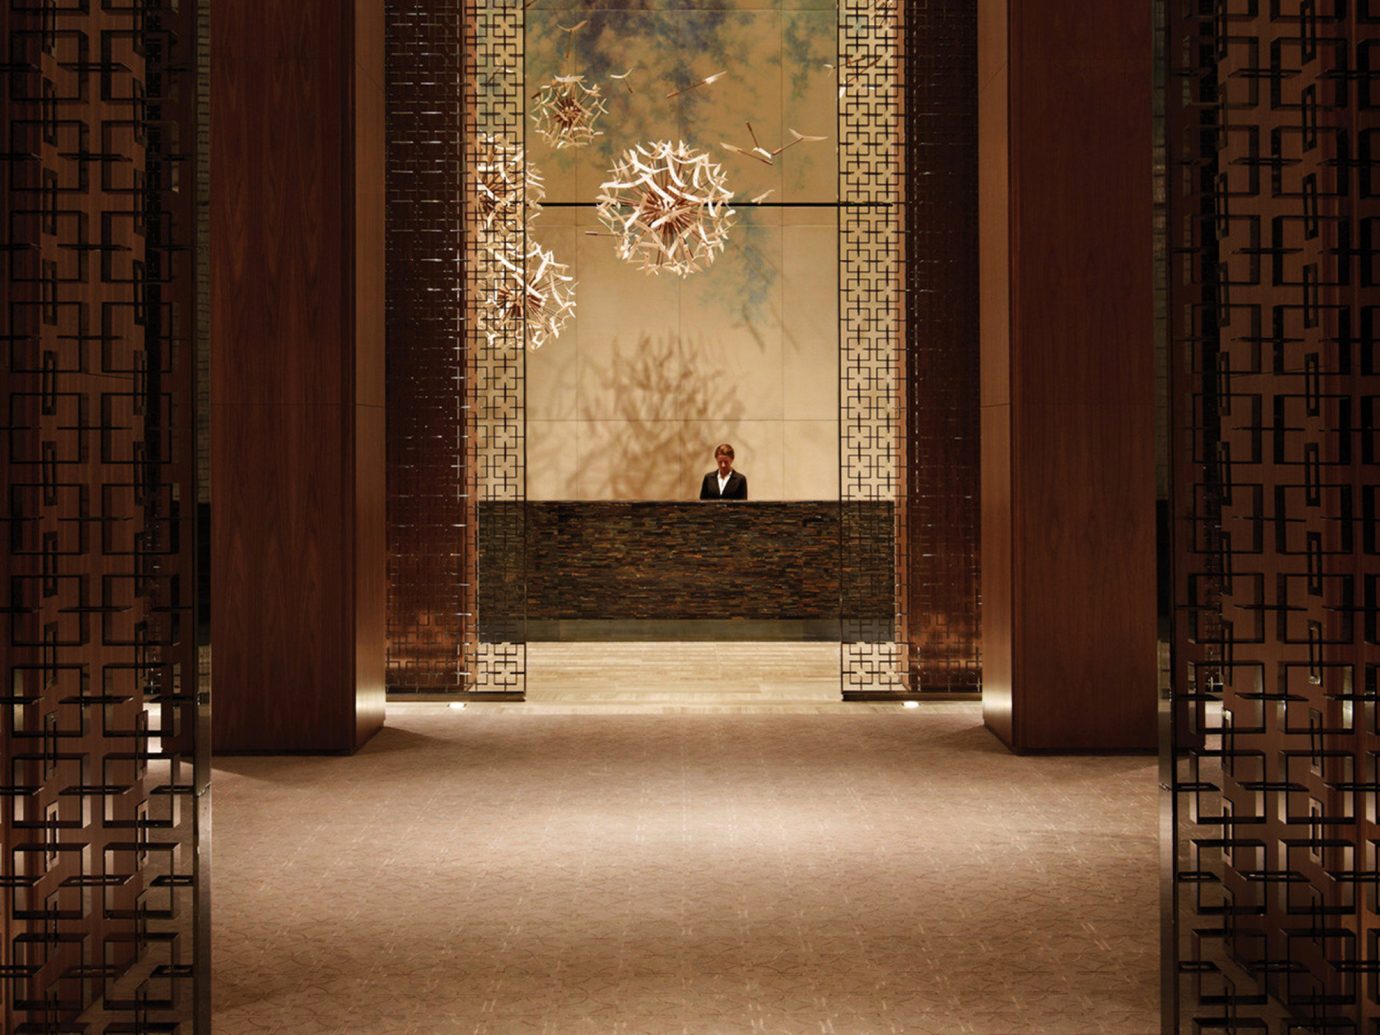 Architecture Canada Design Hotels Lobby Luxury Resort Toronto indoor wall floor flooring interior design wood lighting window covering door altar tiled